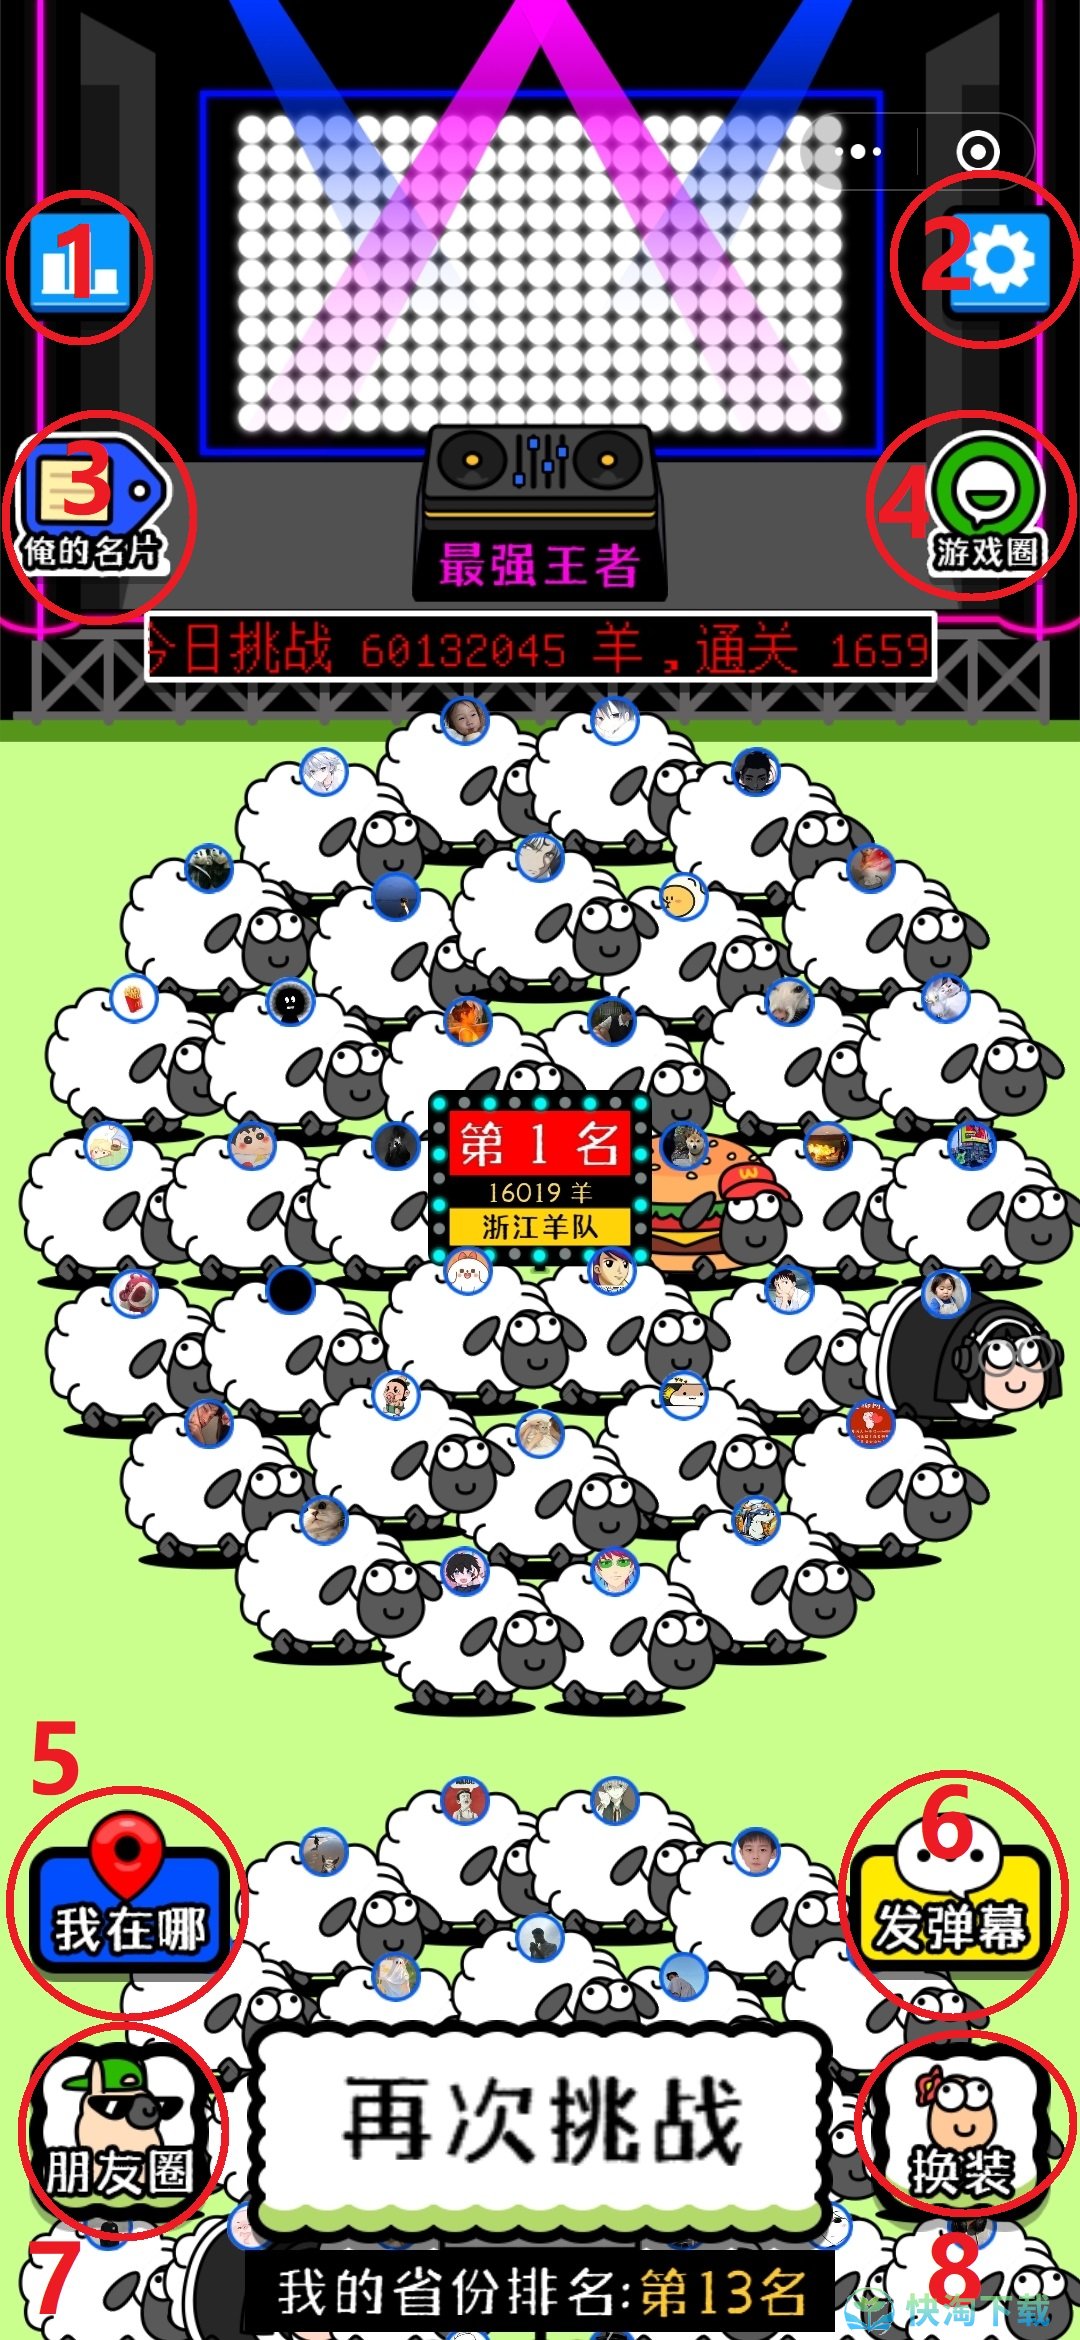 《羊了个羊》游戏谁发明的 羊了个羊出自哪家公司